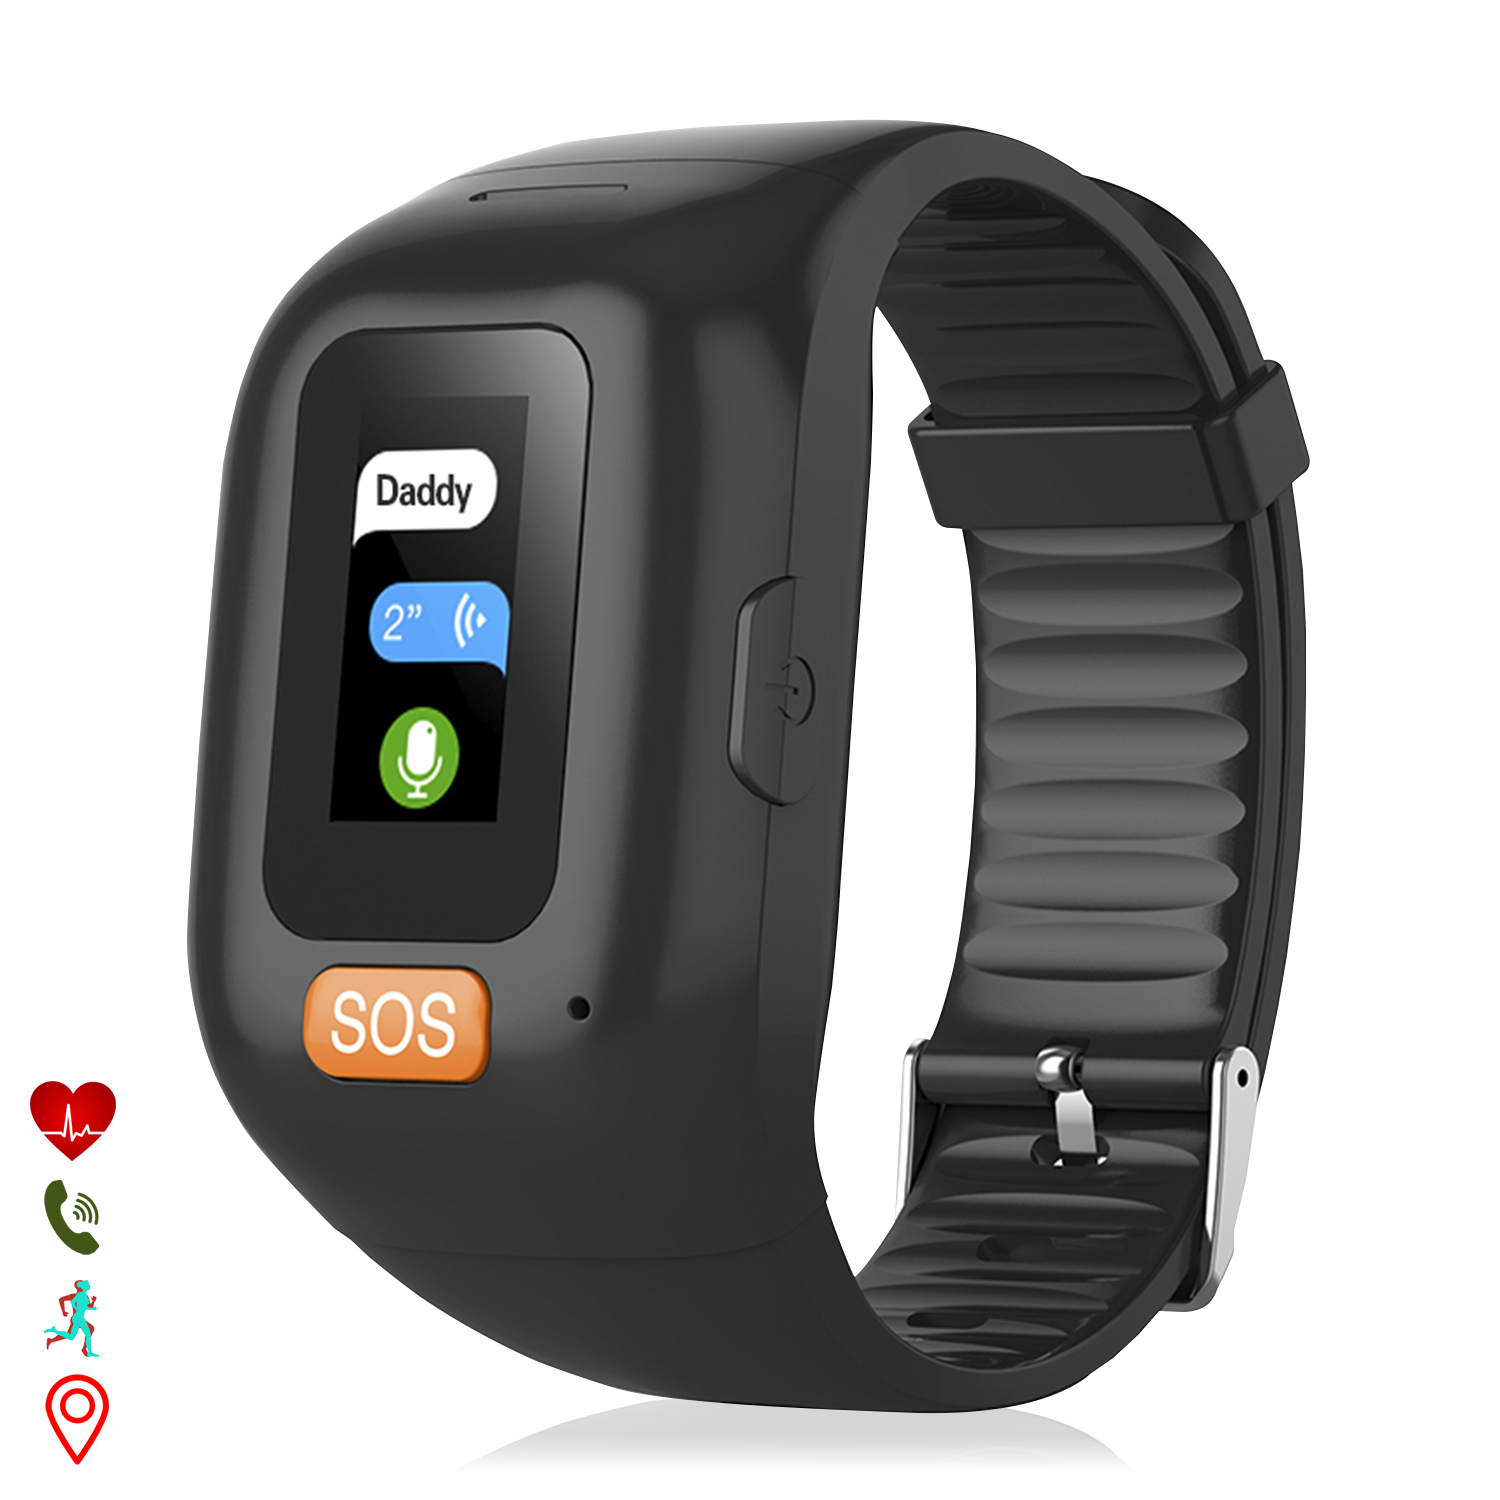 Brazalete localizador GPS con pantalla táctil, botón SOS e  intercomunicador. Especial personas mayores. Con monitor cardíaco.